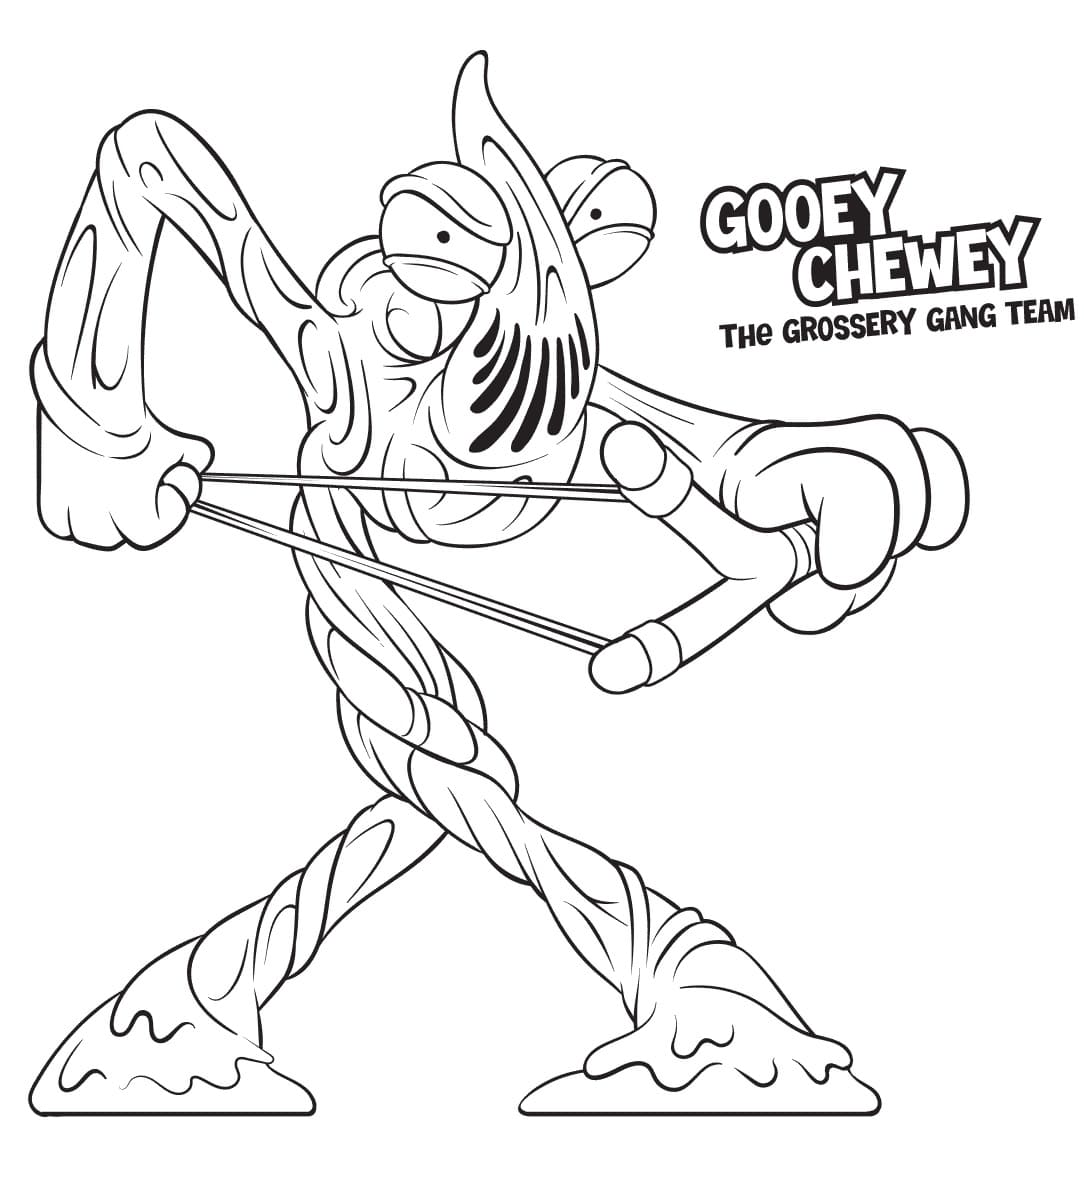 Gooey Chewey Grossery Gang